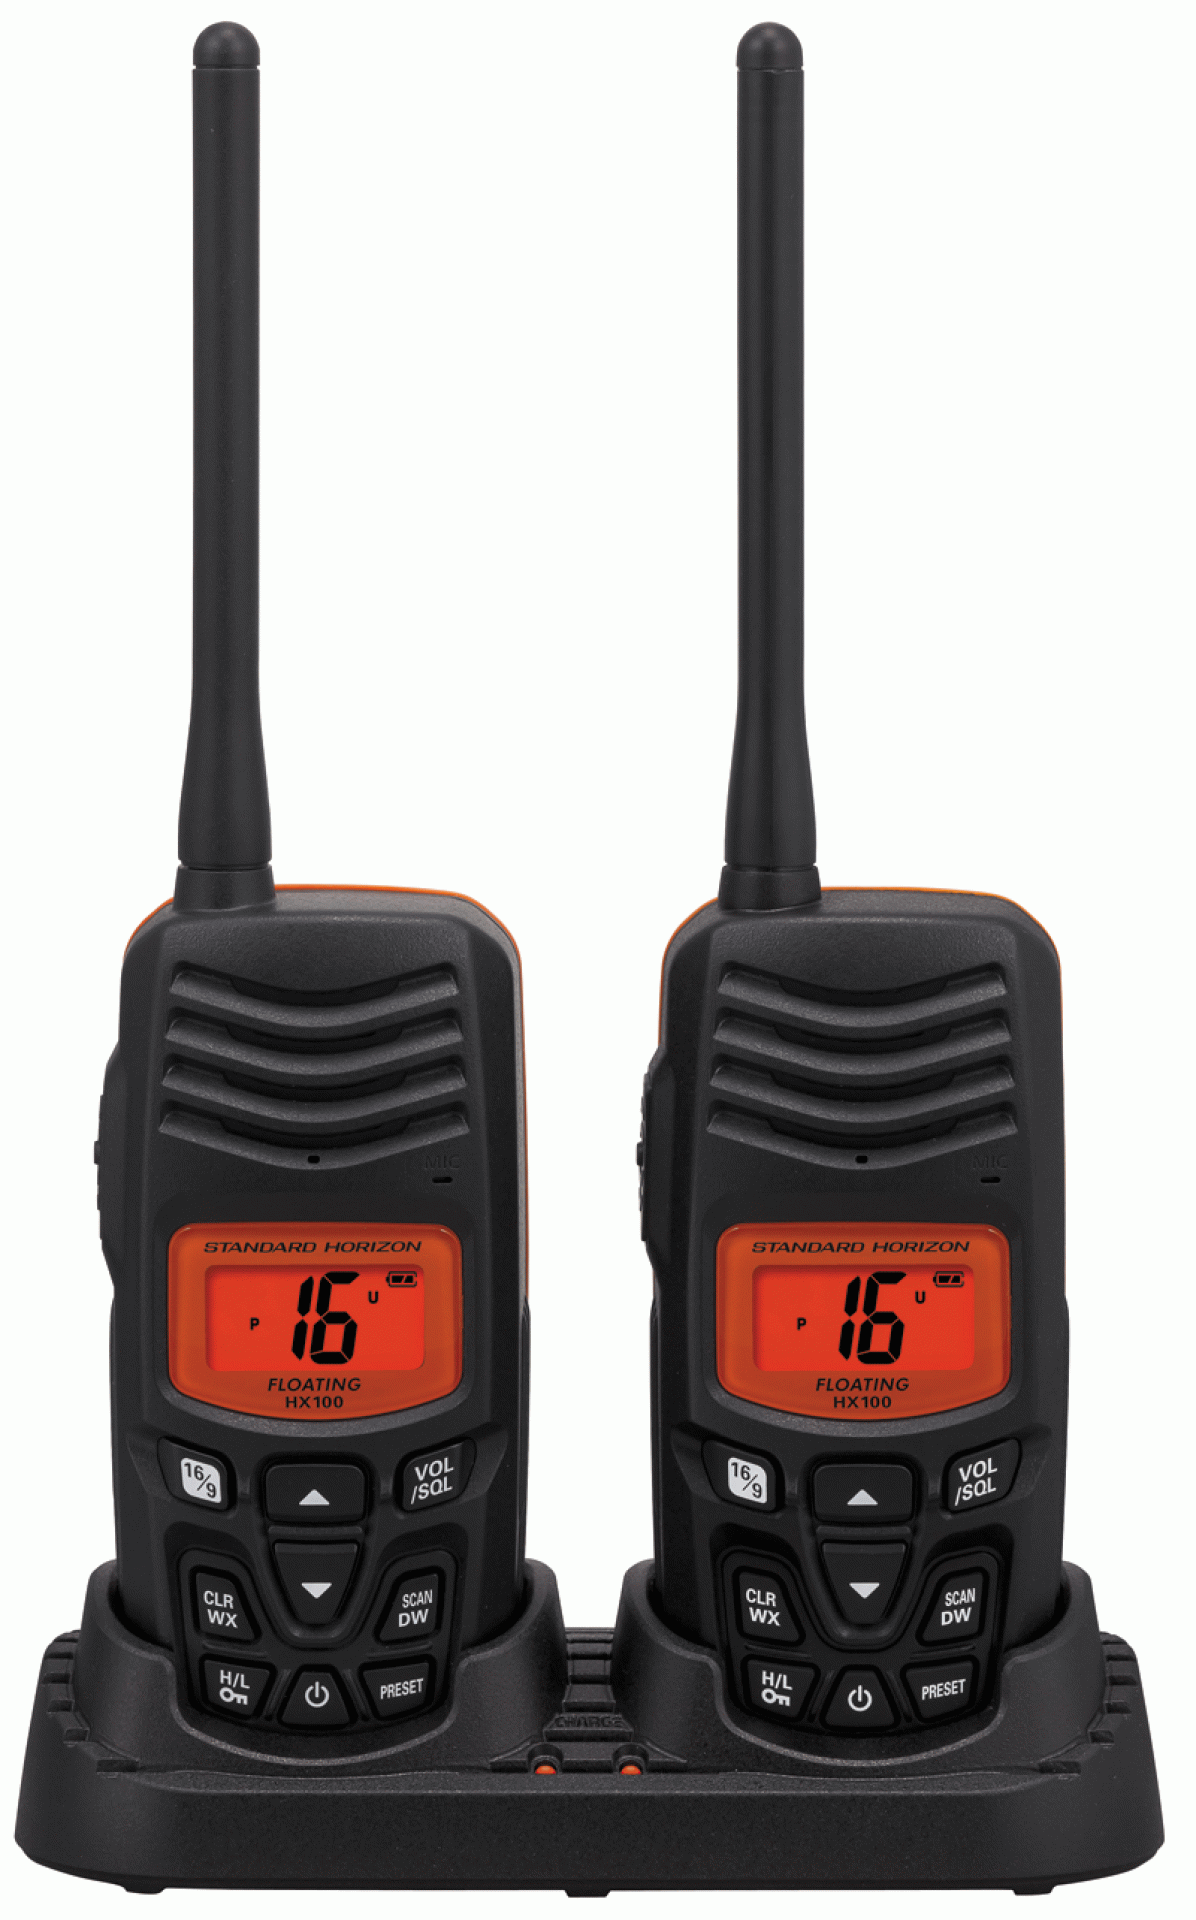 STANDARD HORIZON | HX100 | VHF FLOATING HANDHELD RADIO 2.5 WATT TWIN PACK